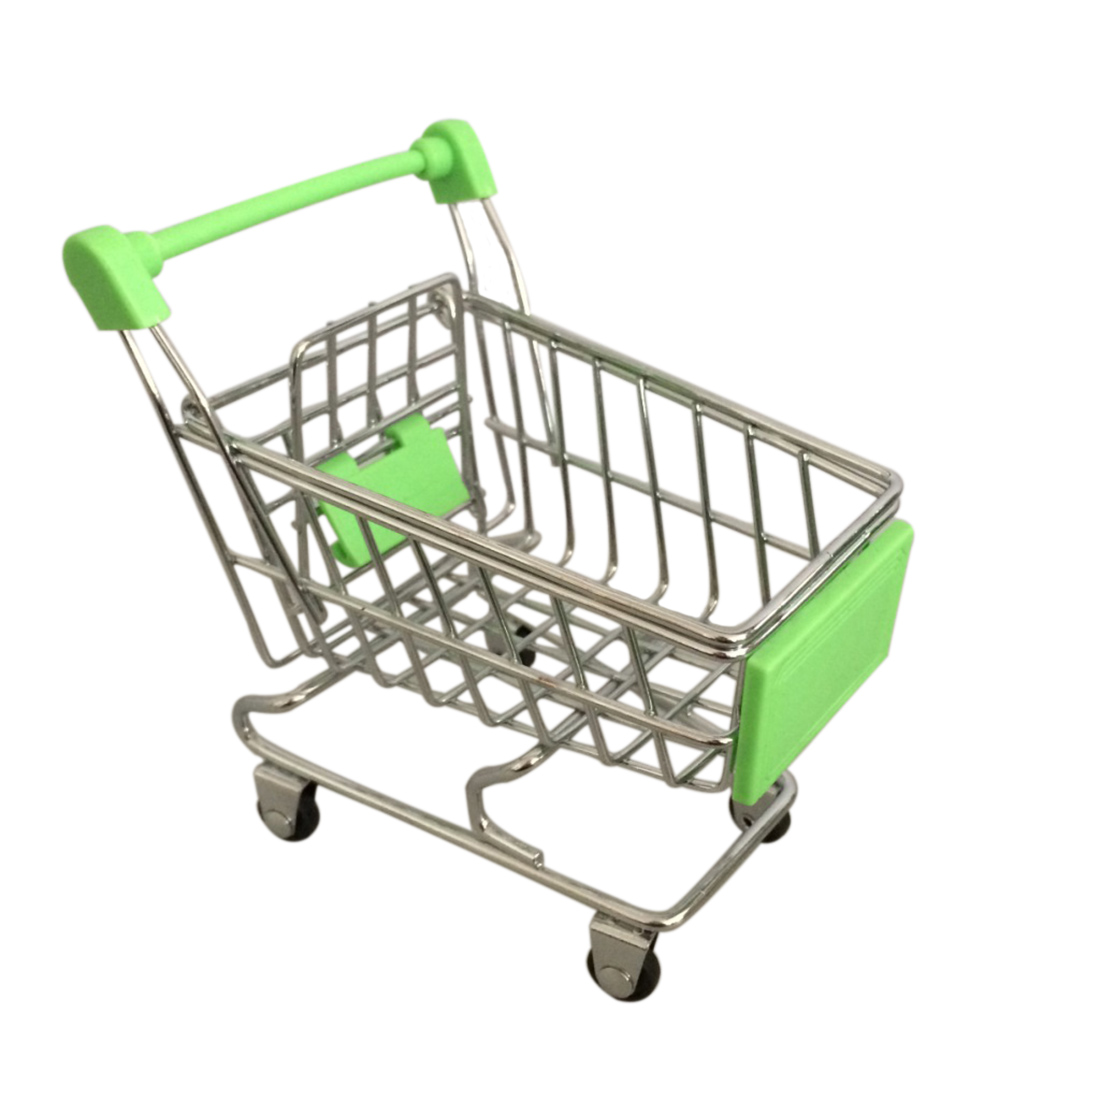 Mini børn håndvogne simulering lille supermarked indkøbskurv utility vogn foregiver lege legetøj klapvogne 12*8.5*11cm: Grøn